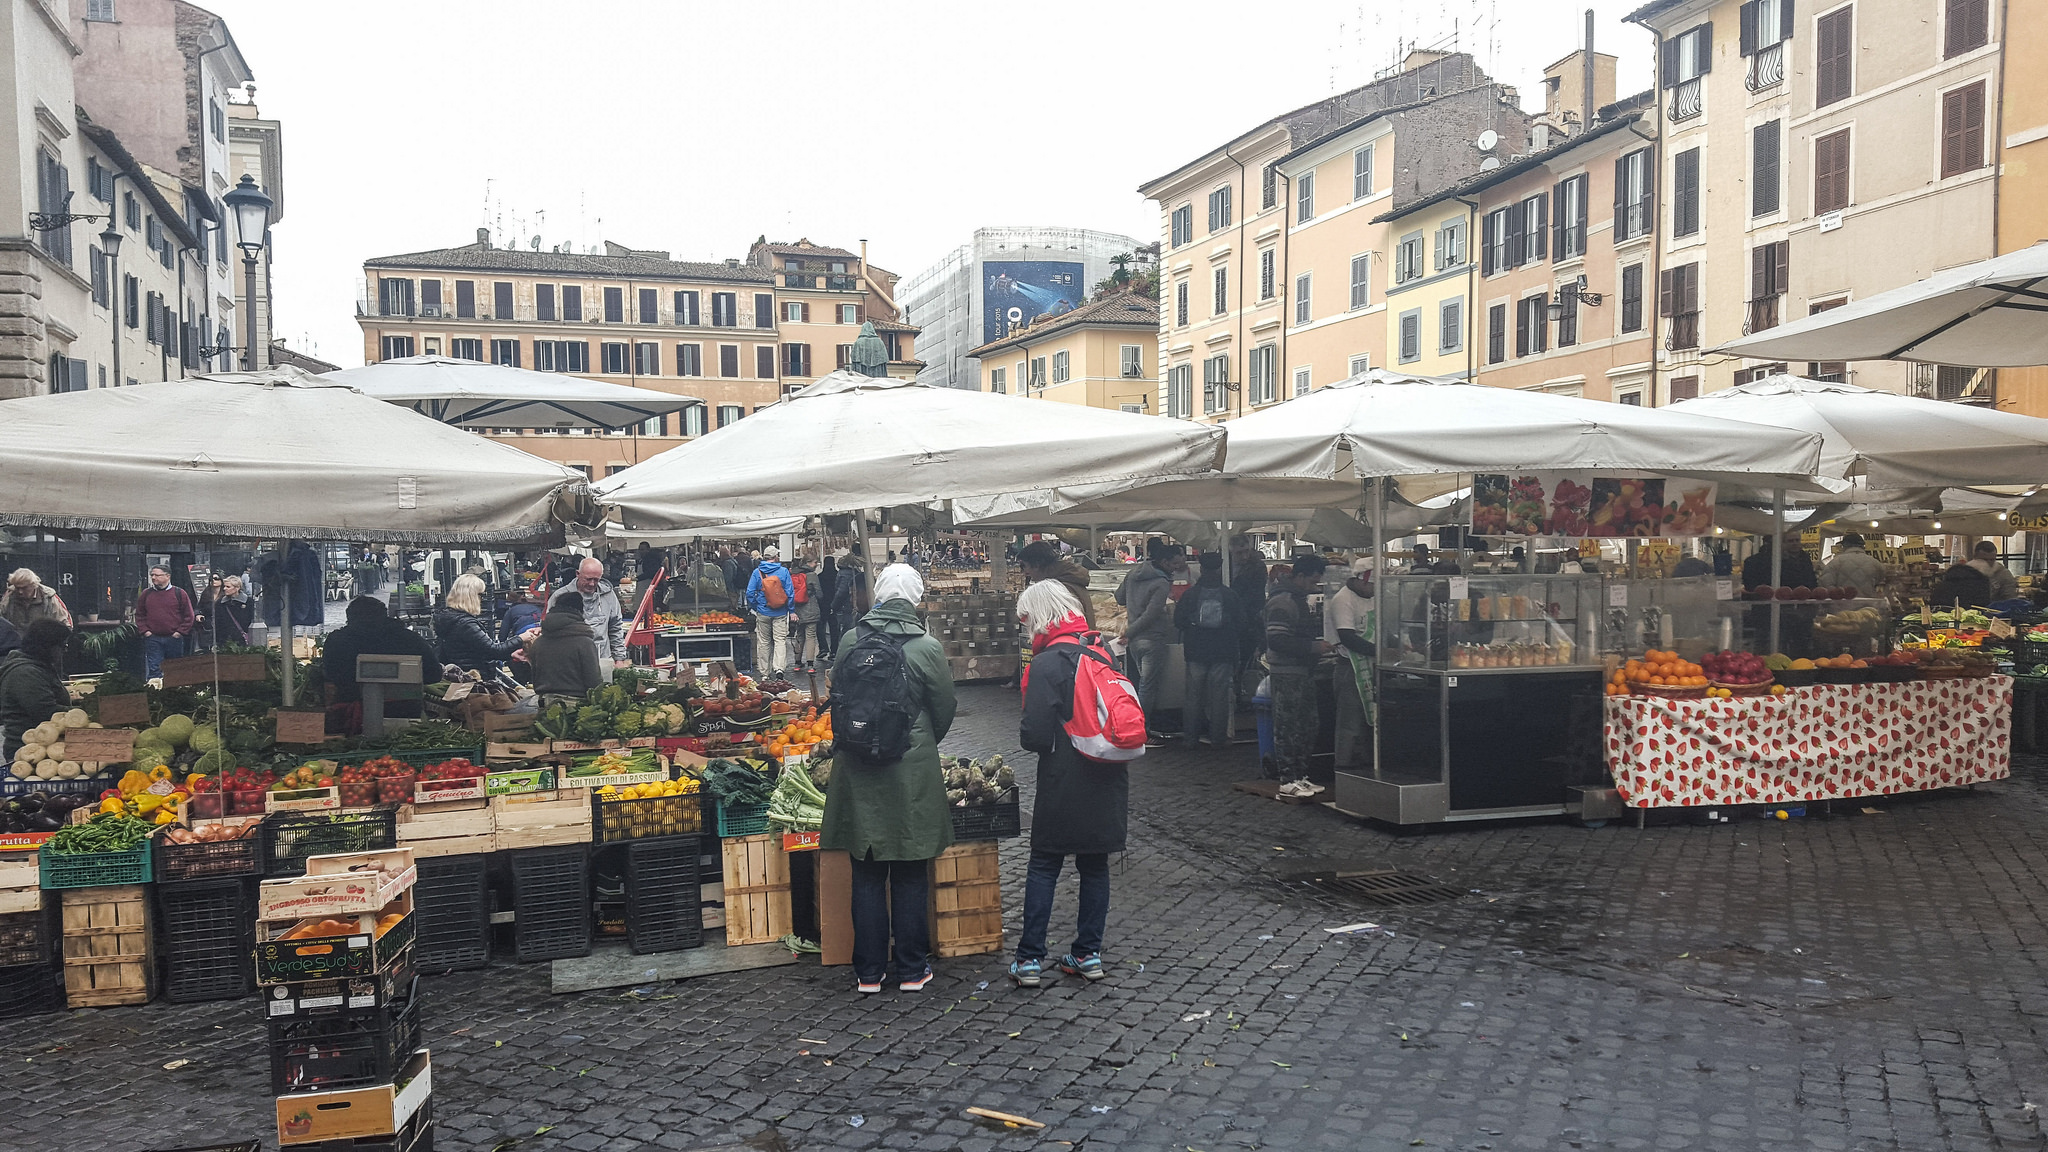 Campo De Fiori Market in Rome